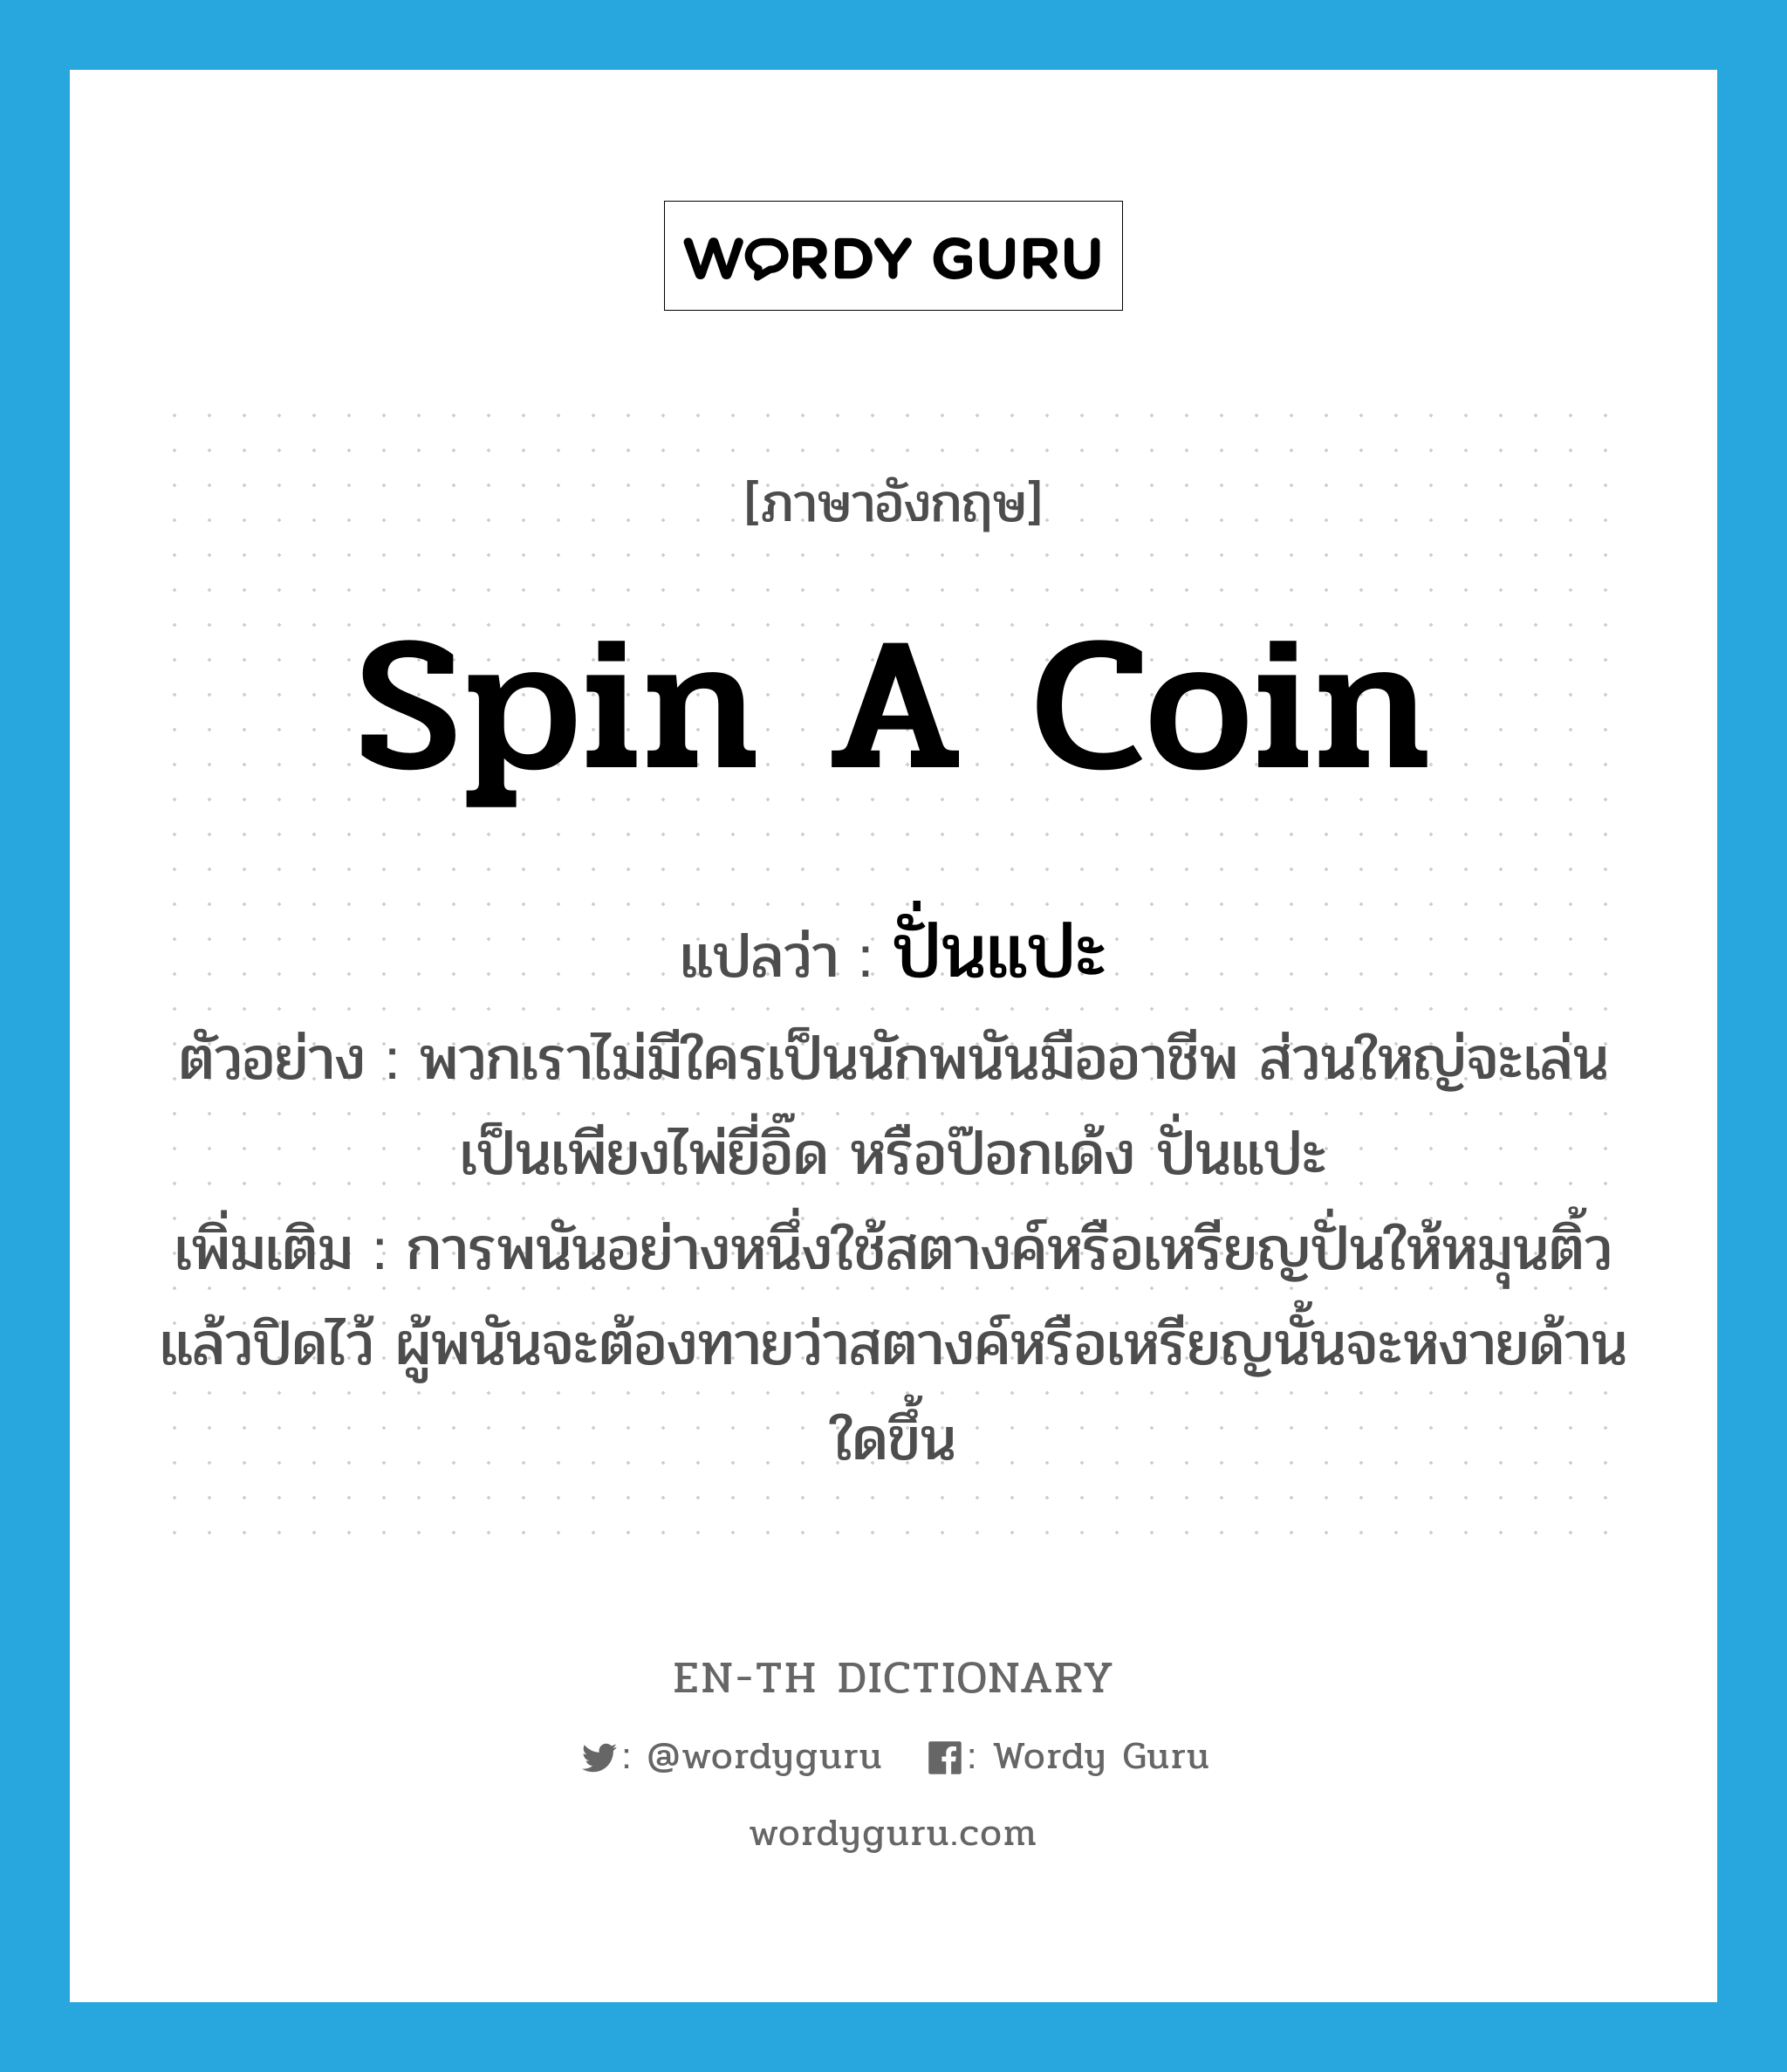 spin a coin แปลว่า?, คำศัพท์ภาษาอังกฤษ spin a coin แปลว่า ปั่นแปะ ประเภท N ตัวอย่าง พวกเราไม่มีใครเป็นนักพนันมืออาชีพ ส่วนใหญ่จะเล่นเป็นเพียงไพ่ยี่อิ๊ด หรือป๊อกเด้ง ปั่นแปะ เพิ่มเติม การพนันอย่างหนึ่งใช้สตางค์หรือเหรียญปั่นให้หมุนติ้วแล้วปิดไว้ ผู้พนันจะต้องทายว่าสตางค์หรือเหรียญนั้นจะหงายด้านใดขึ้น หมวด N